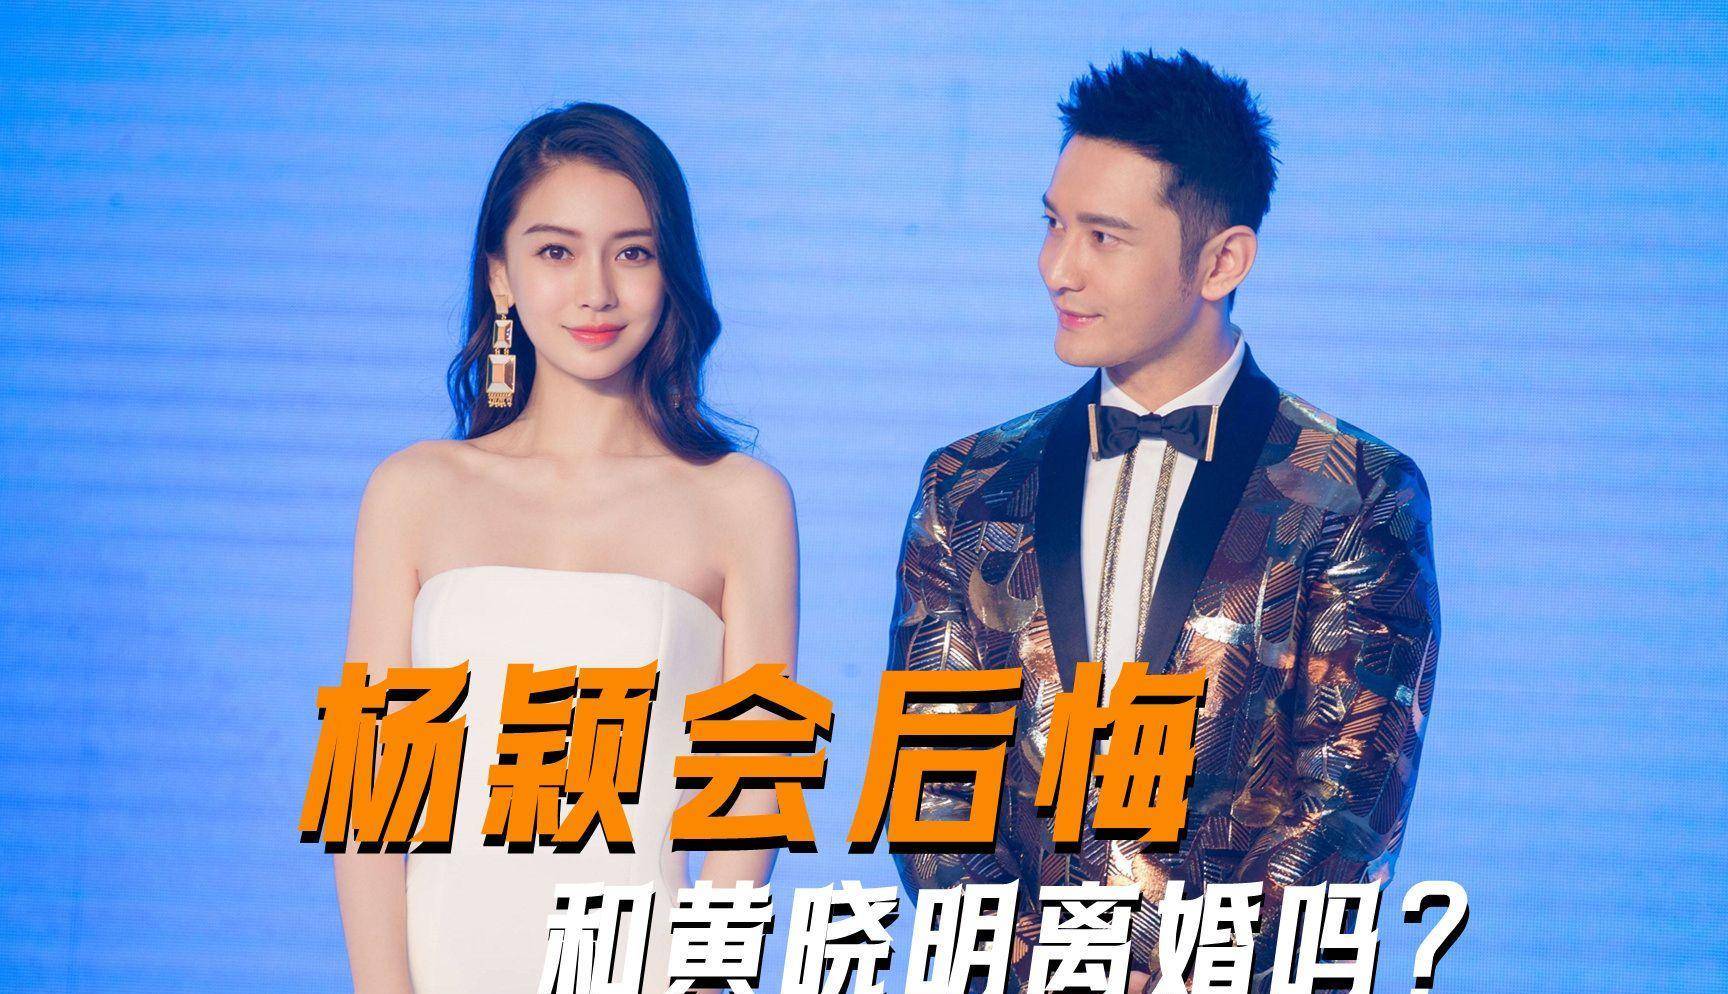 作为一对公认的明星夫妇,黄晓明和杨颖的离婚引起了大量讨论